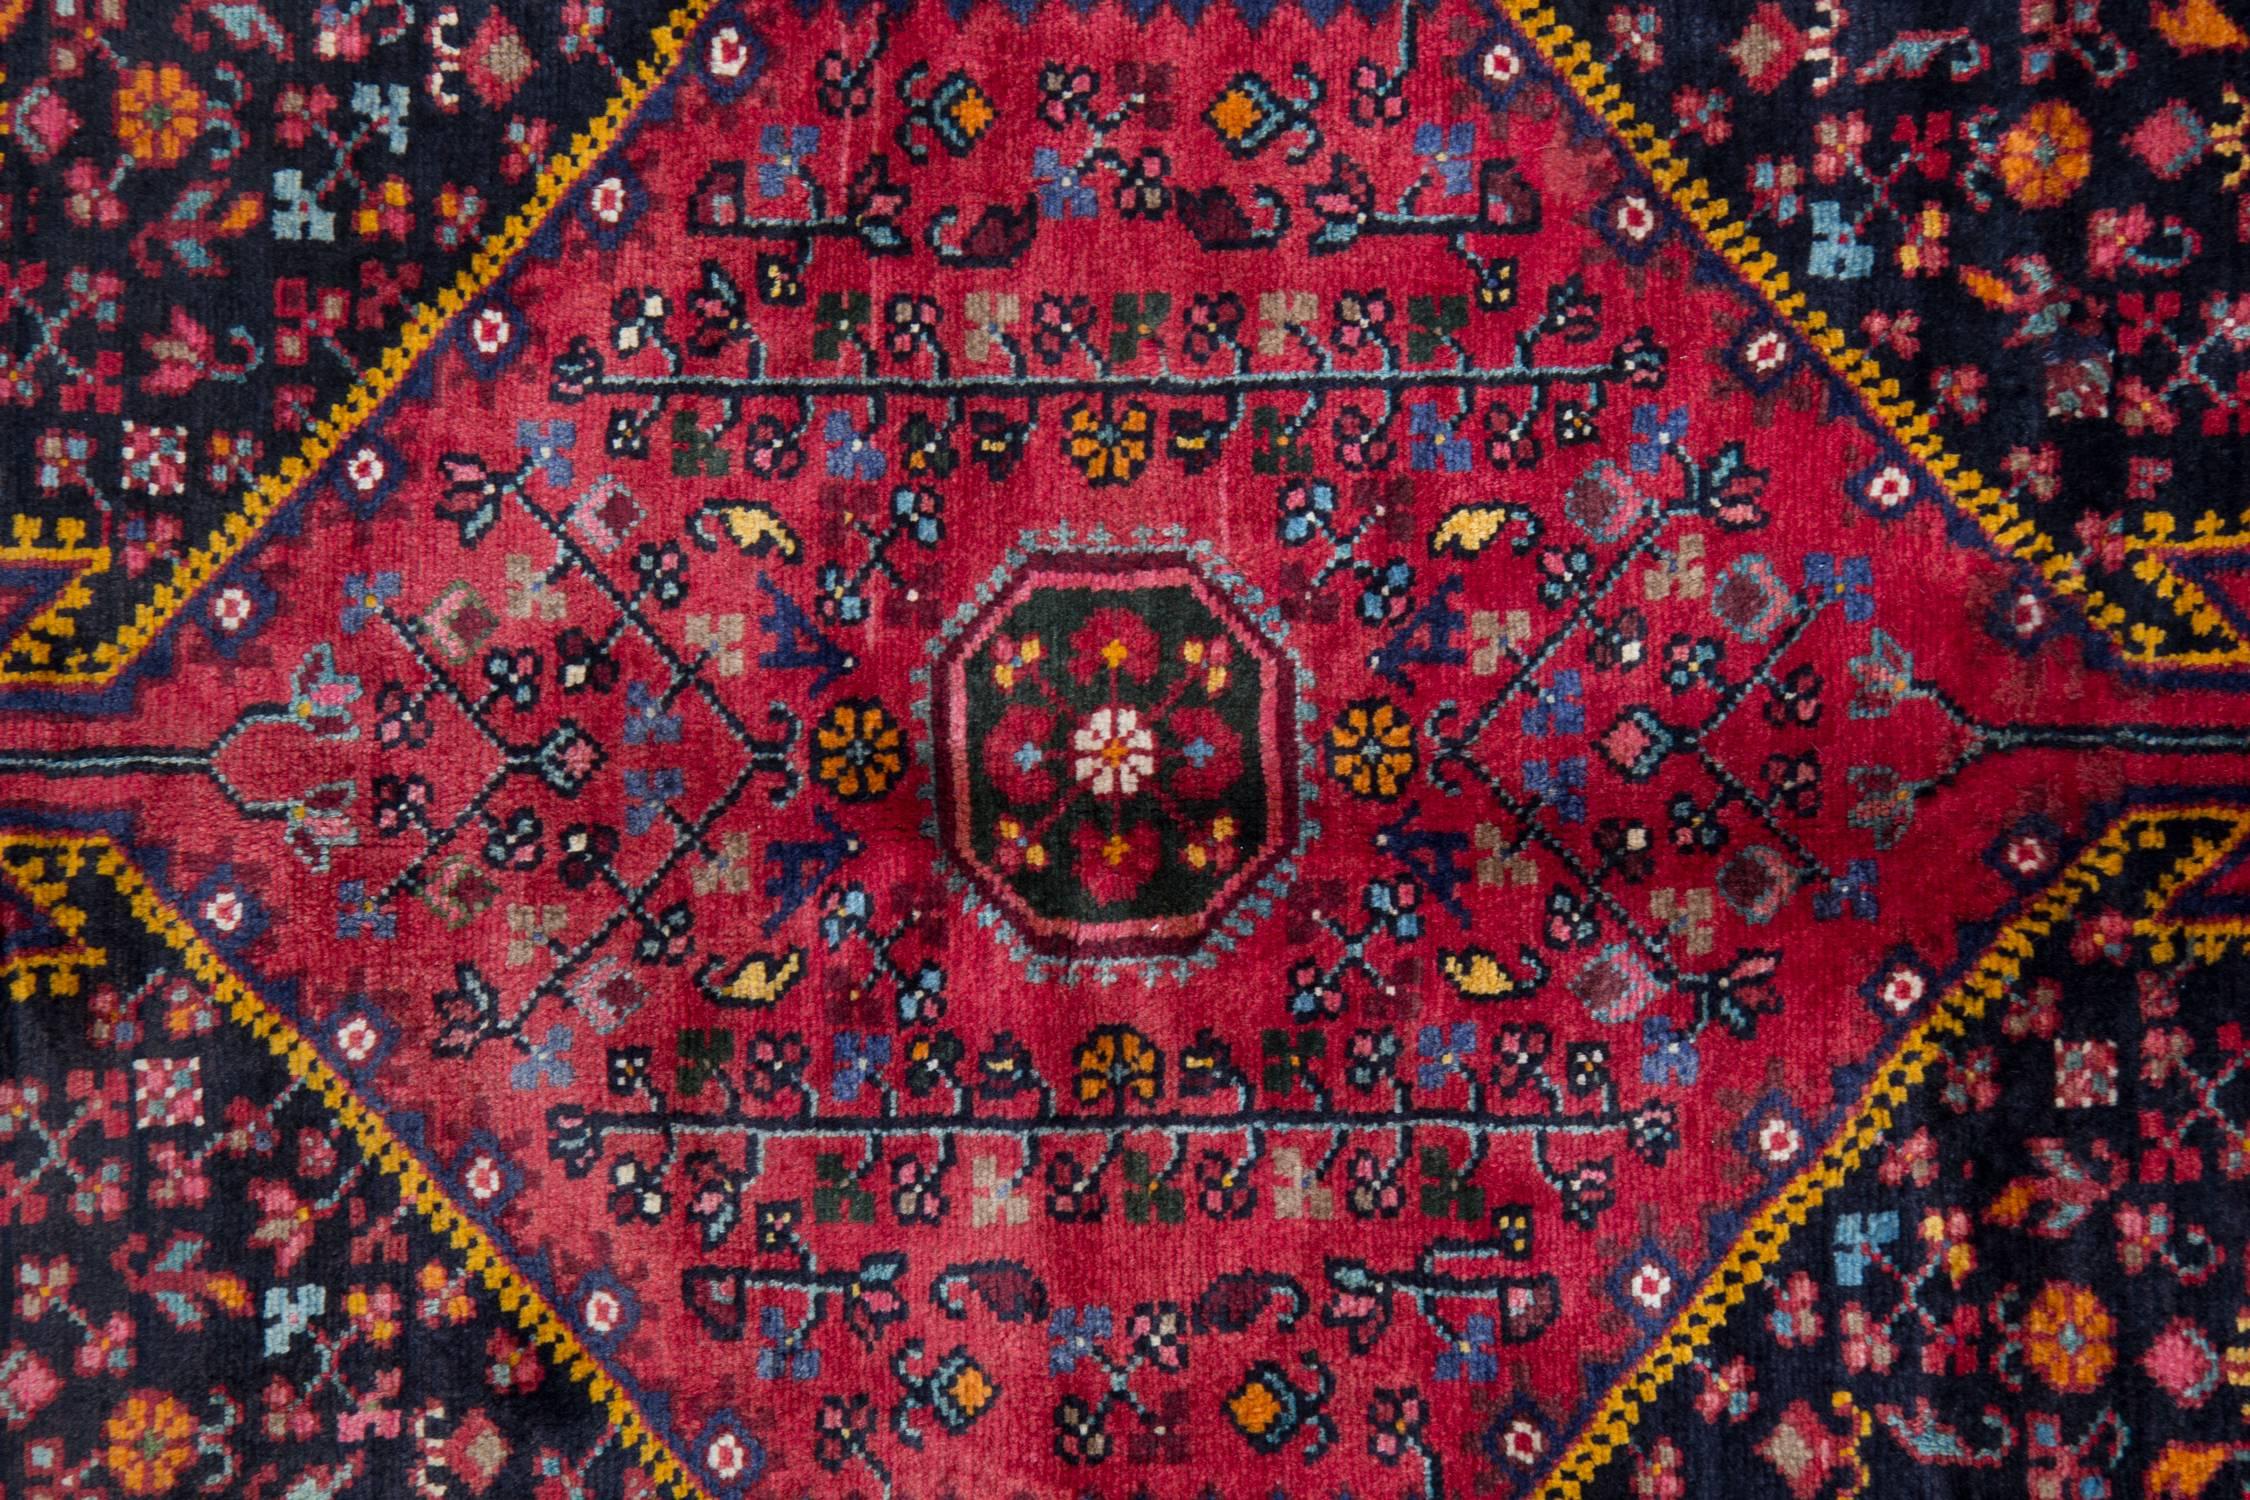 Dieser Teppich aus tiefroter Wolle wurde in den 1970er Jahren in Afghanistan von Hand gewebt, wobei die Materialien vor Ort beschafft wurden. Das Design besteht aus einem sechseckigen Medaillon mit aufwendig gewebten Motiven und Mustern sowie einer